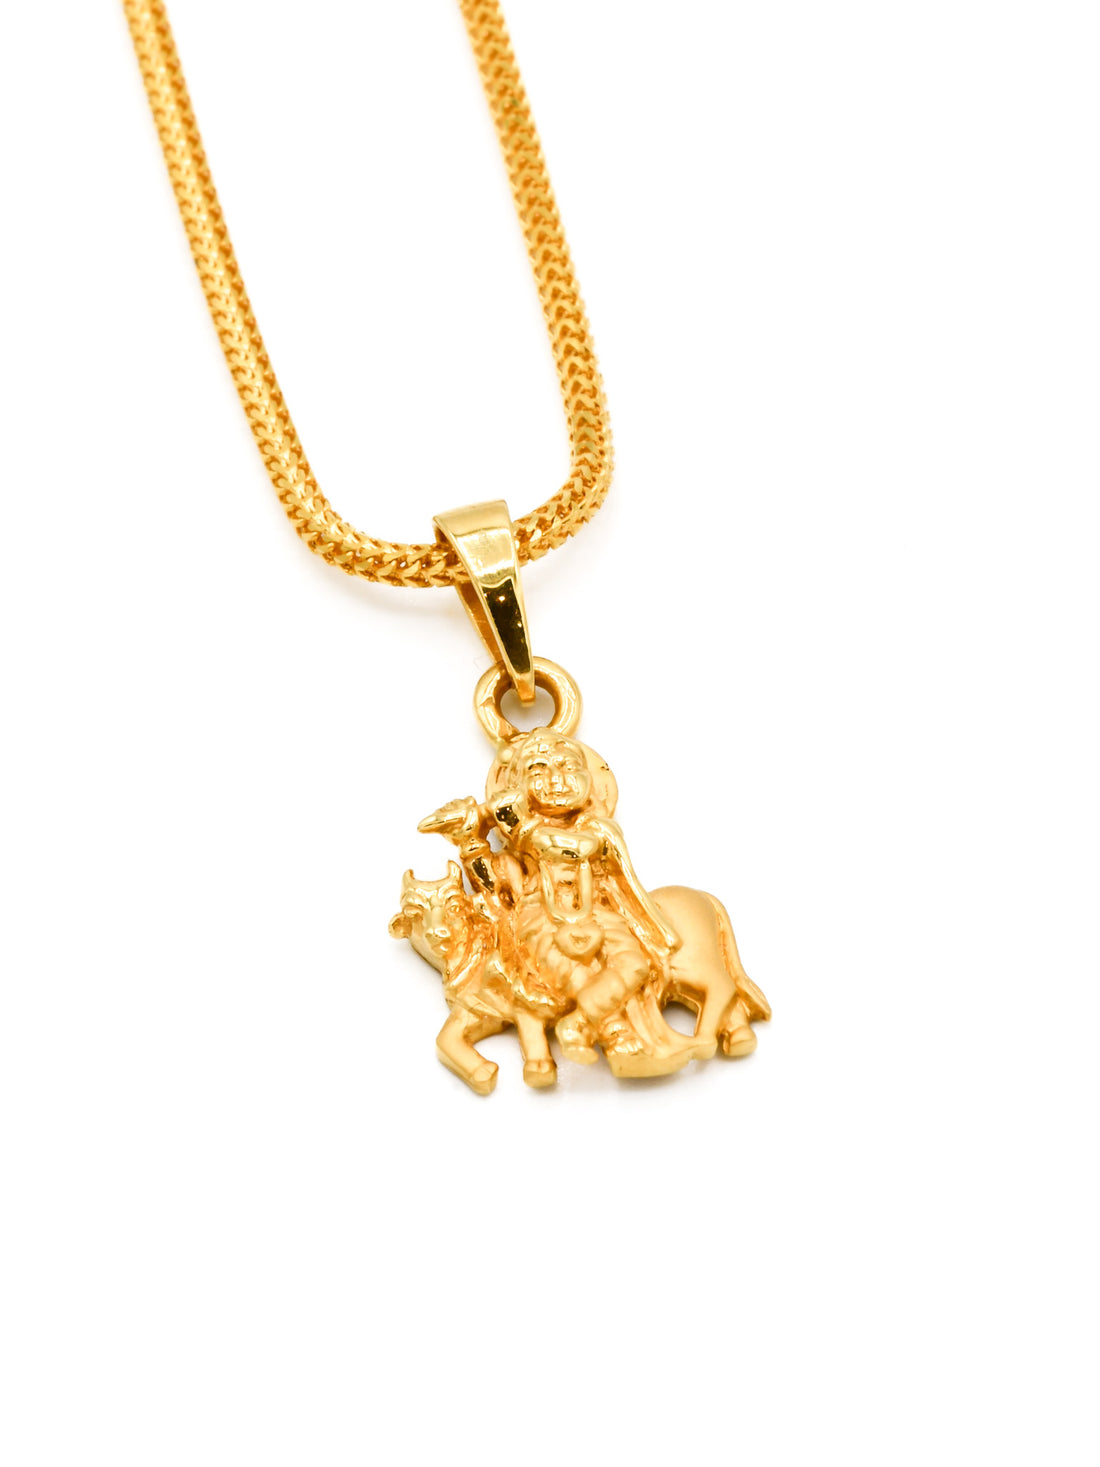 22ct Gold Krishna Pendant - Roop Darshan